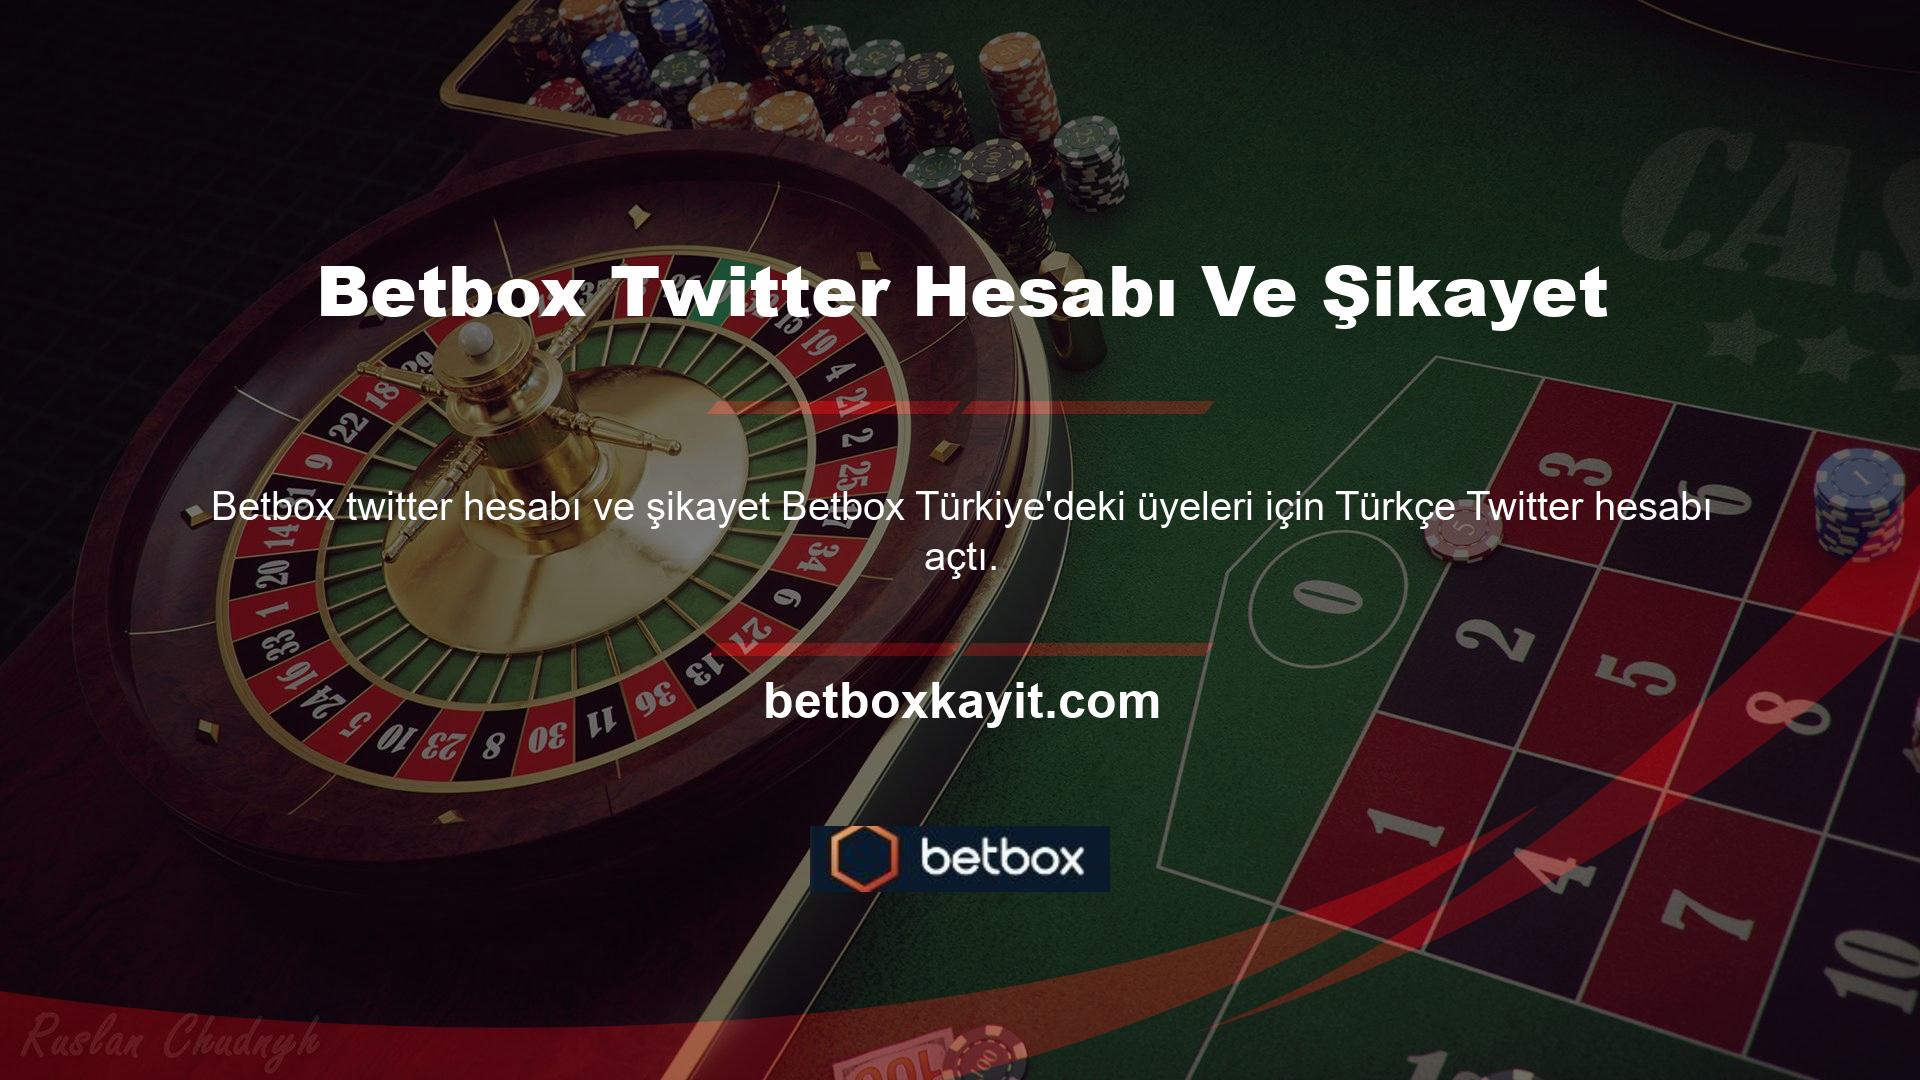 Türk üyeler, sitede olup bitenlerden haberdar olmak için Betbox Türk'ün Türkiye'deki Twitter hesabını takip edebilirler